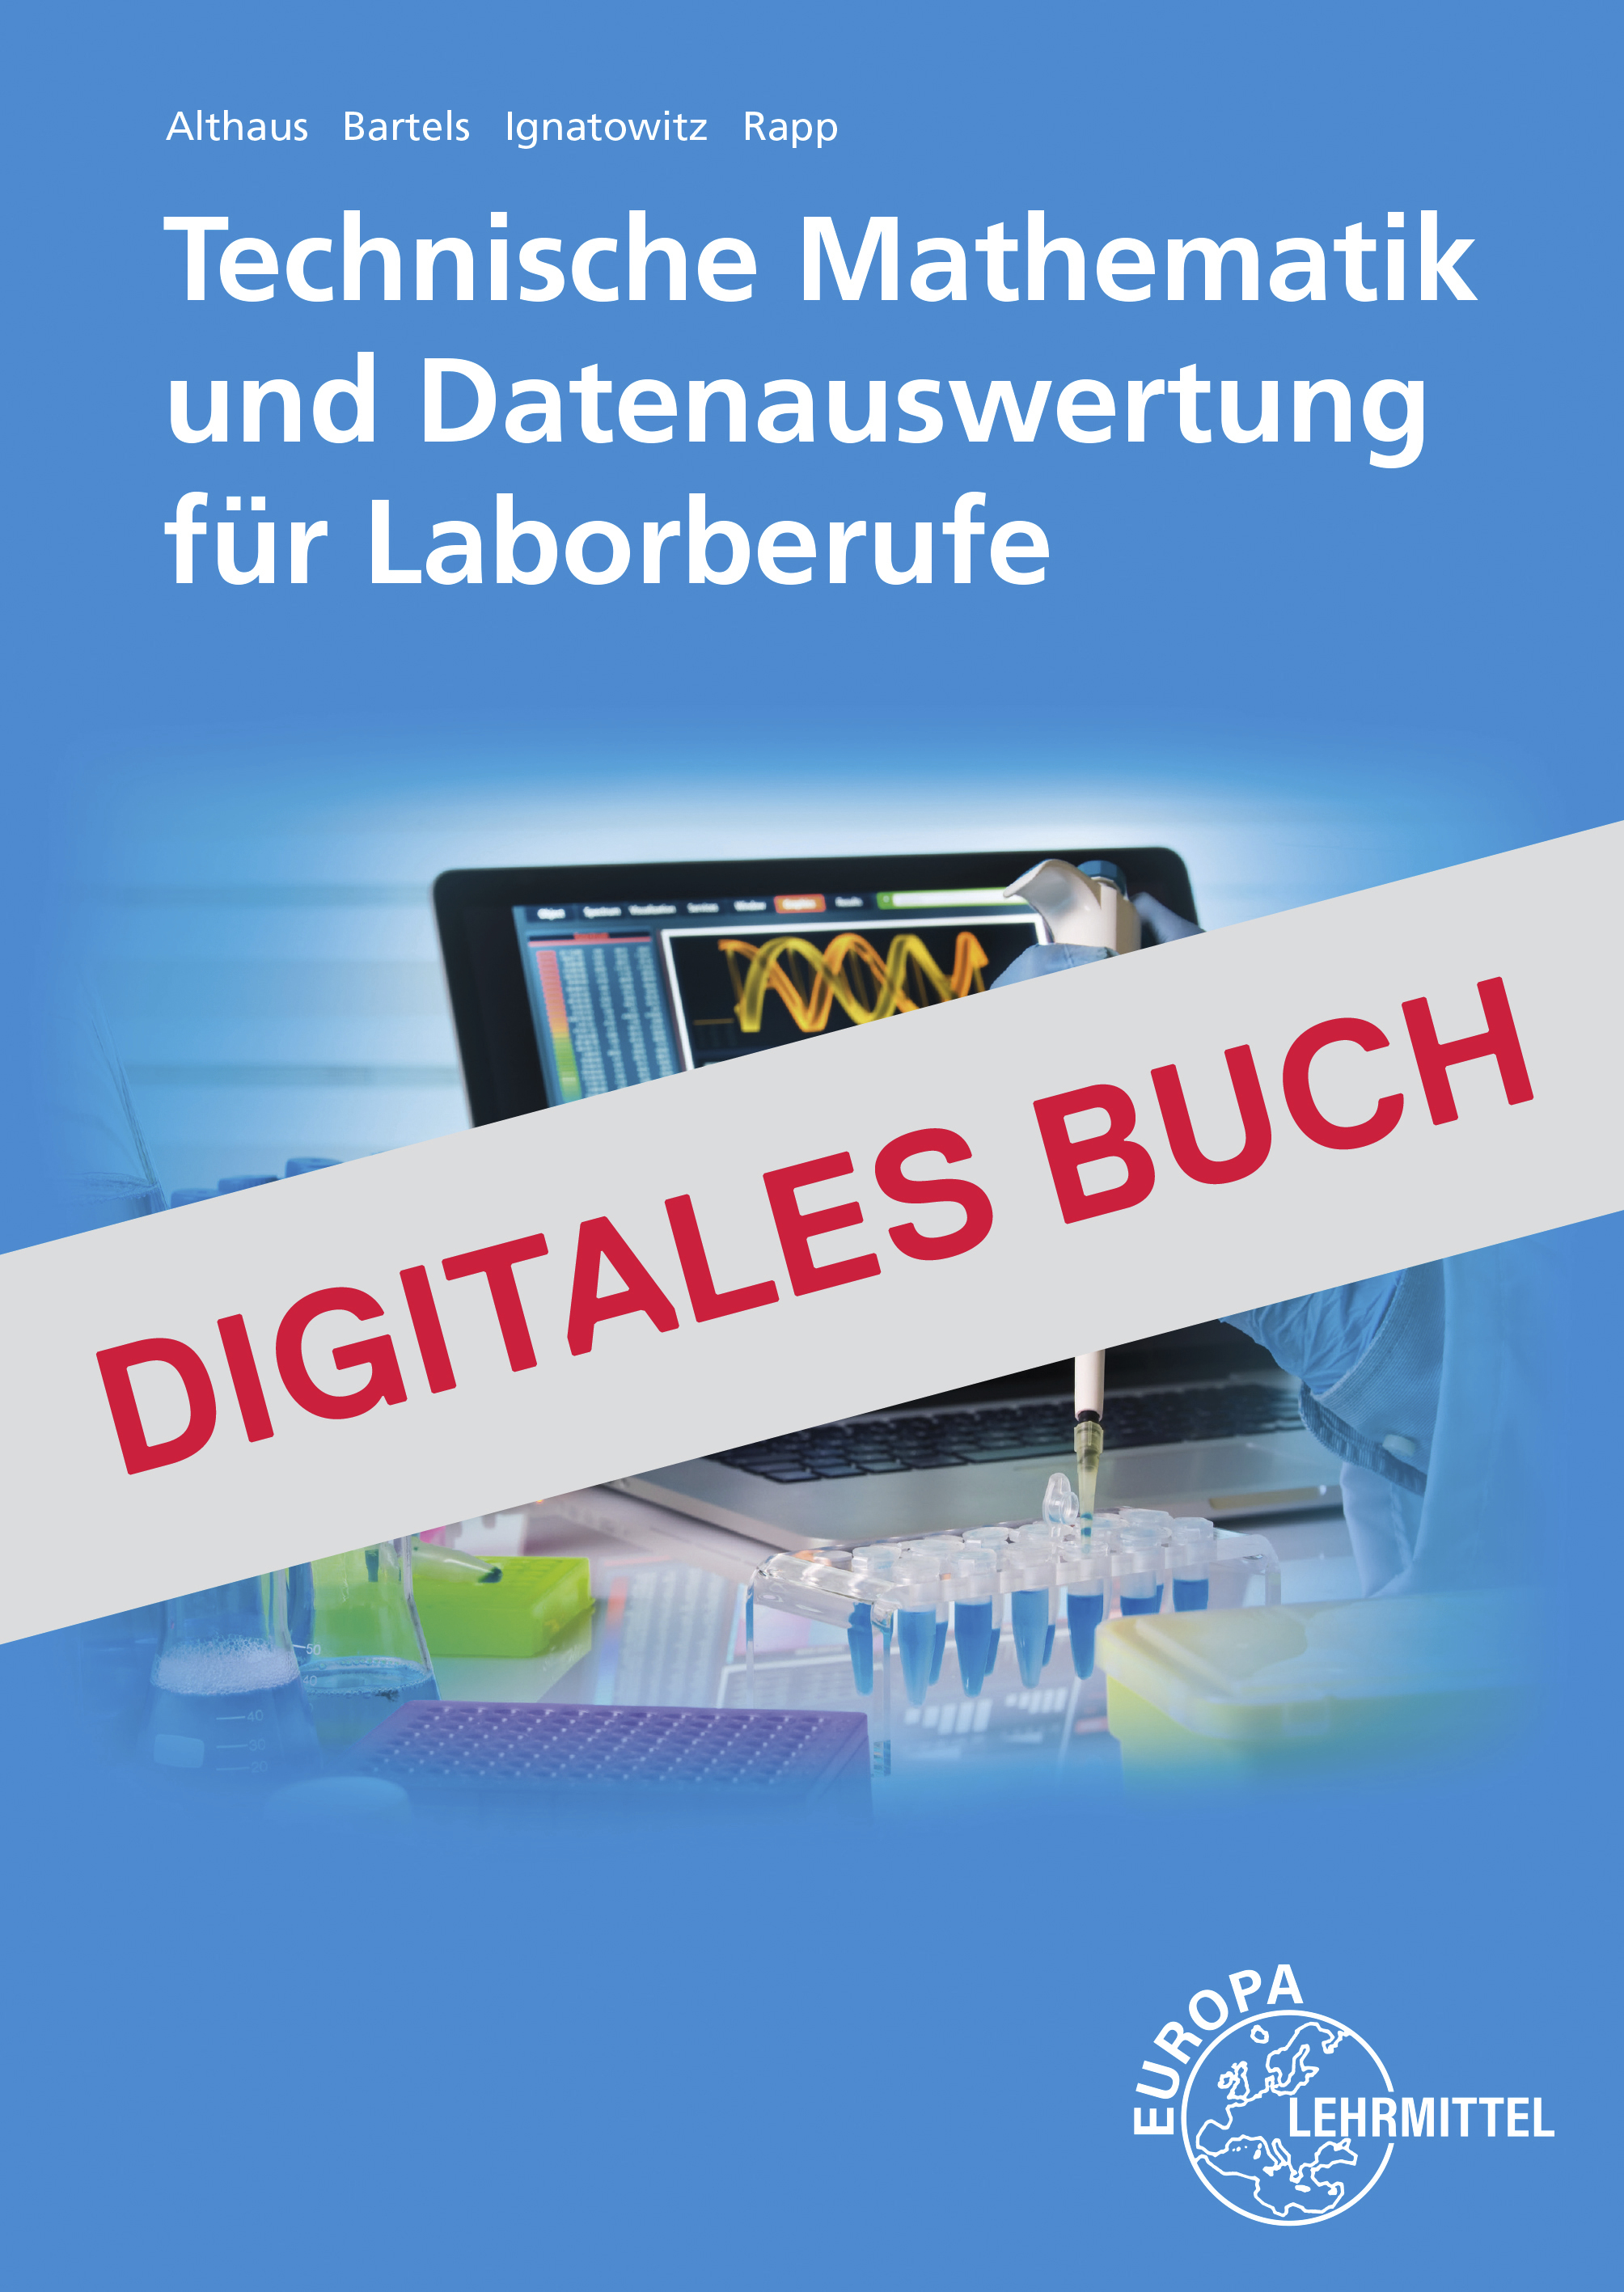 Technische Mathematik und Datenauswertung für Laborberufe - Digitales Buch